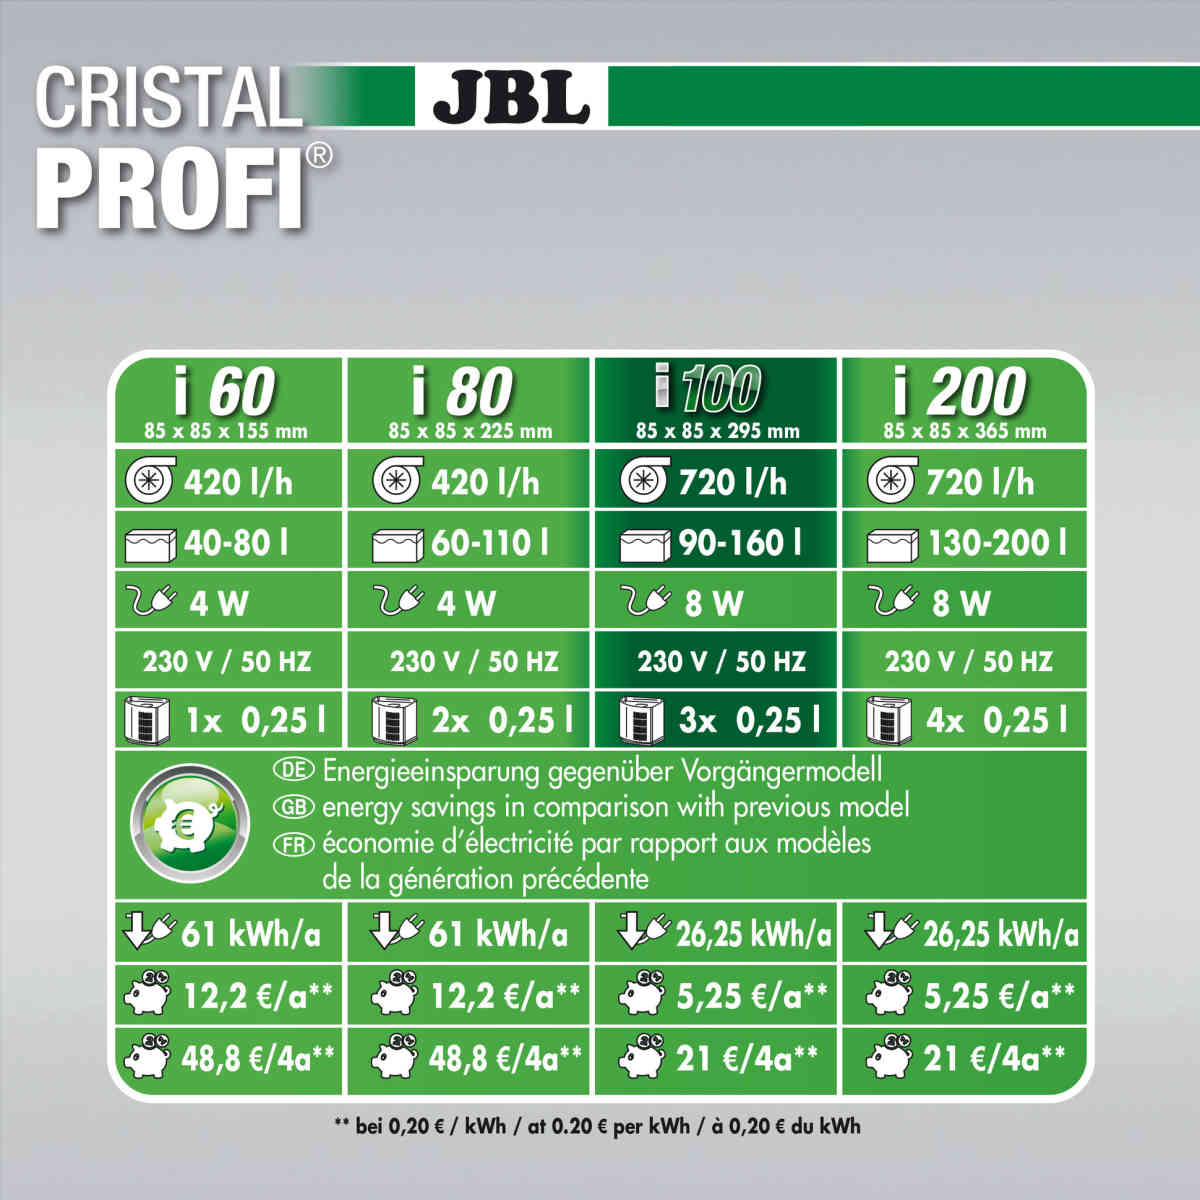 JBL Innenfilter cristalprofi Technische Daten Vergleich Modelle